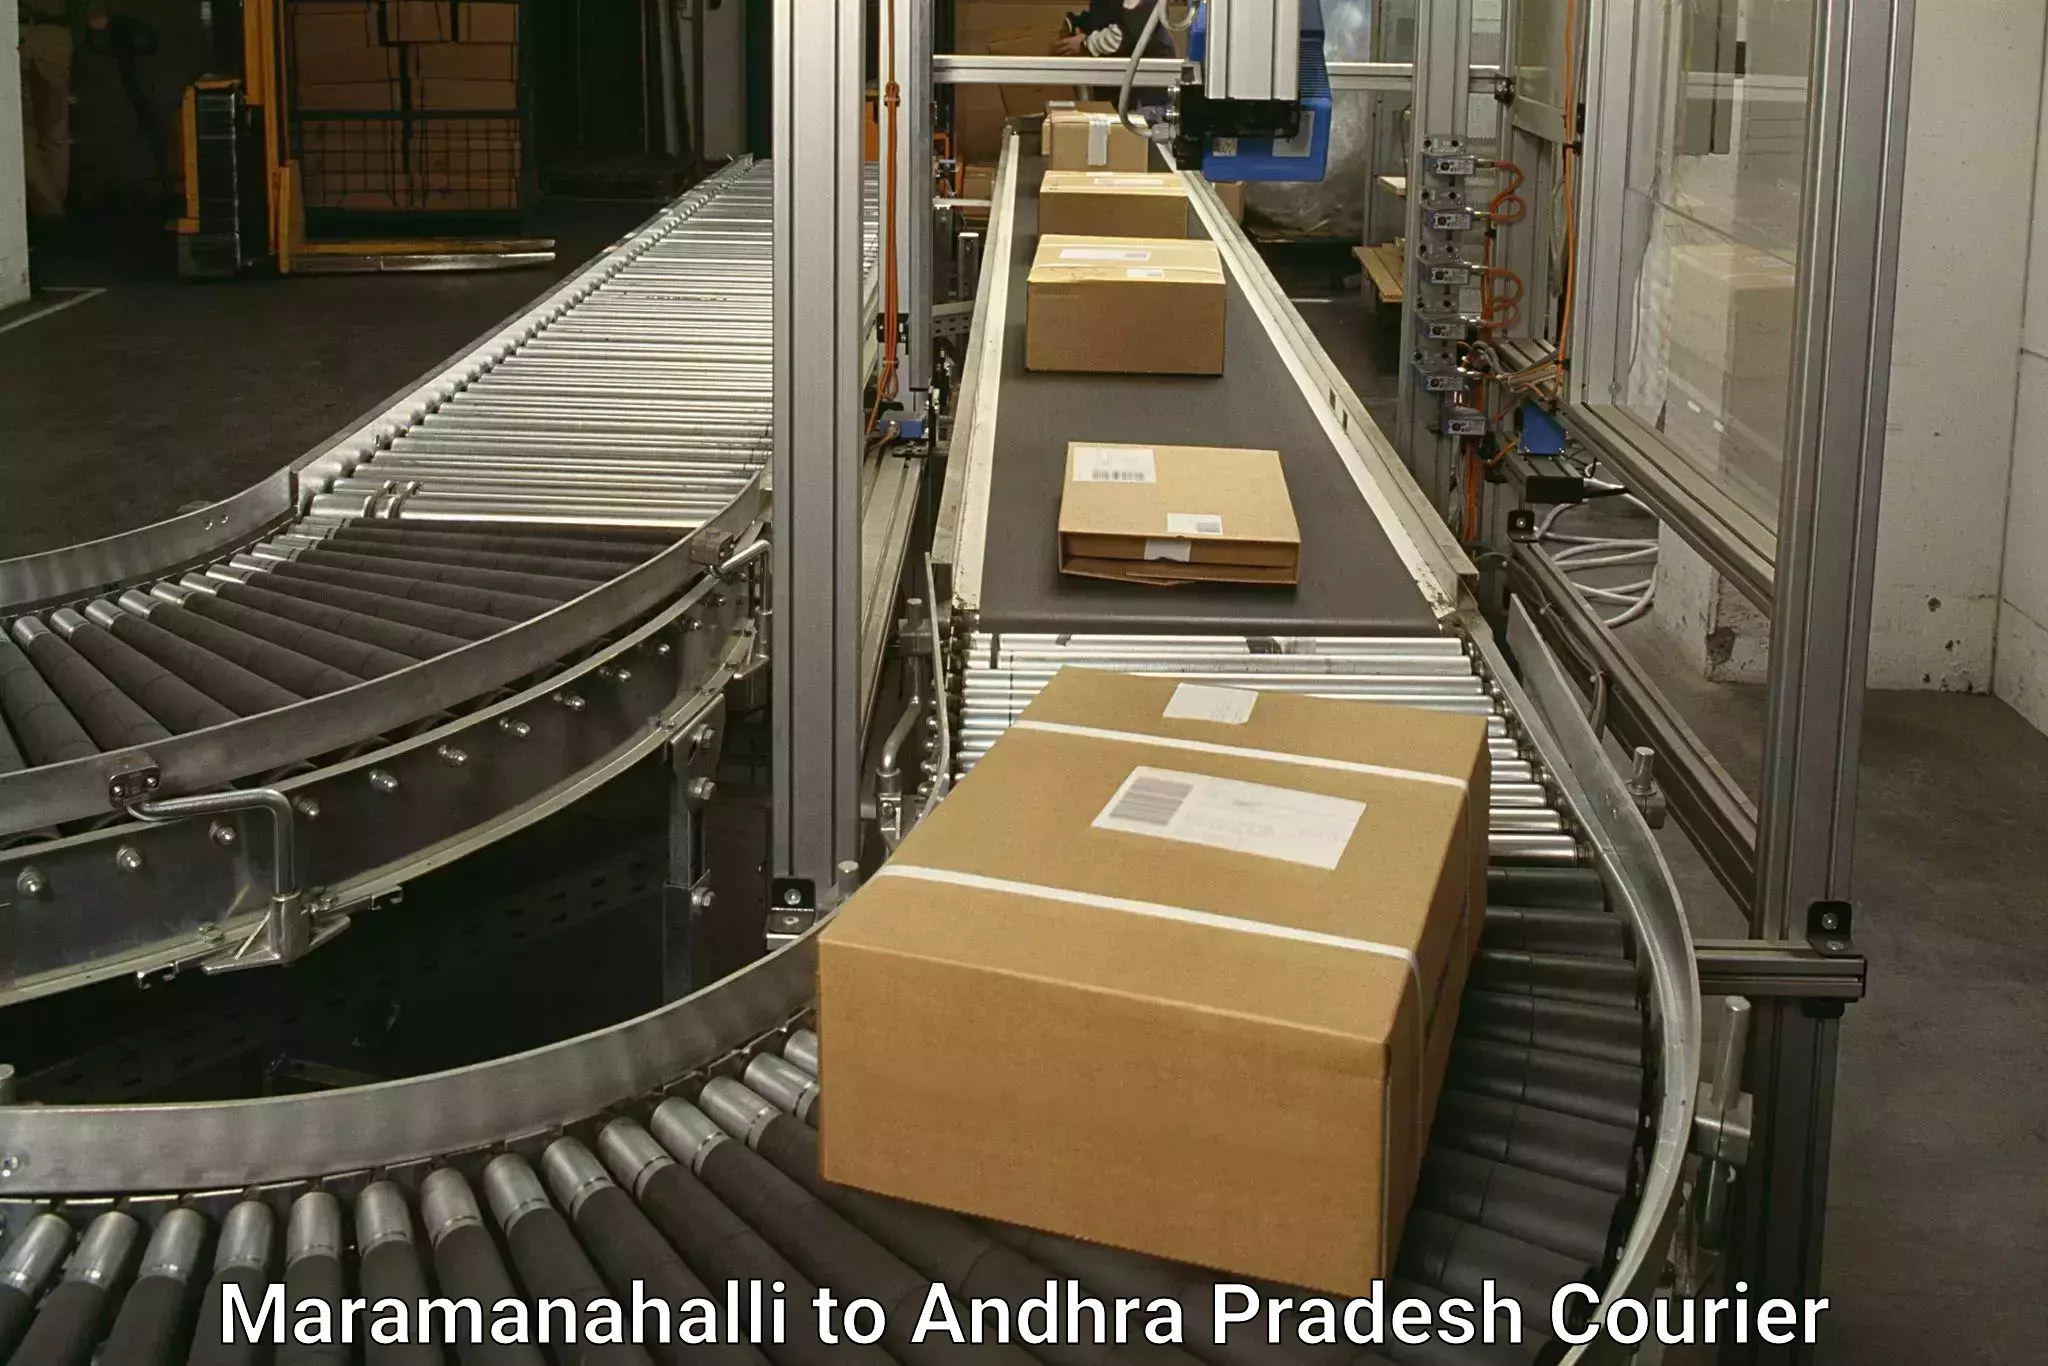 Supply chain efficiency Maramanahalli to Mulakalacheruvu